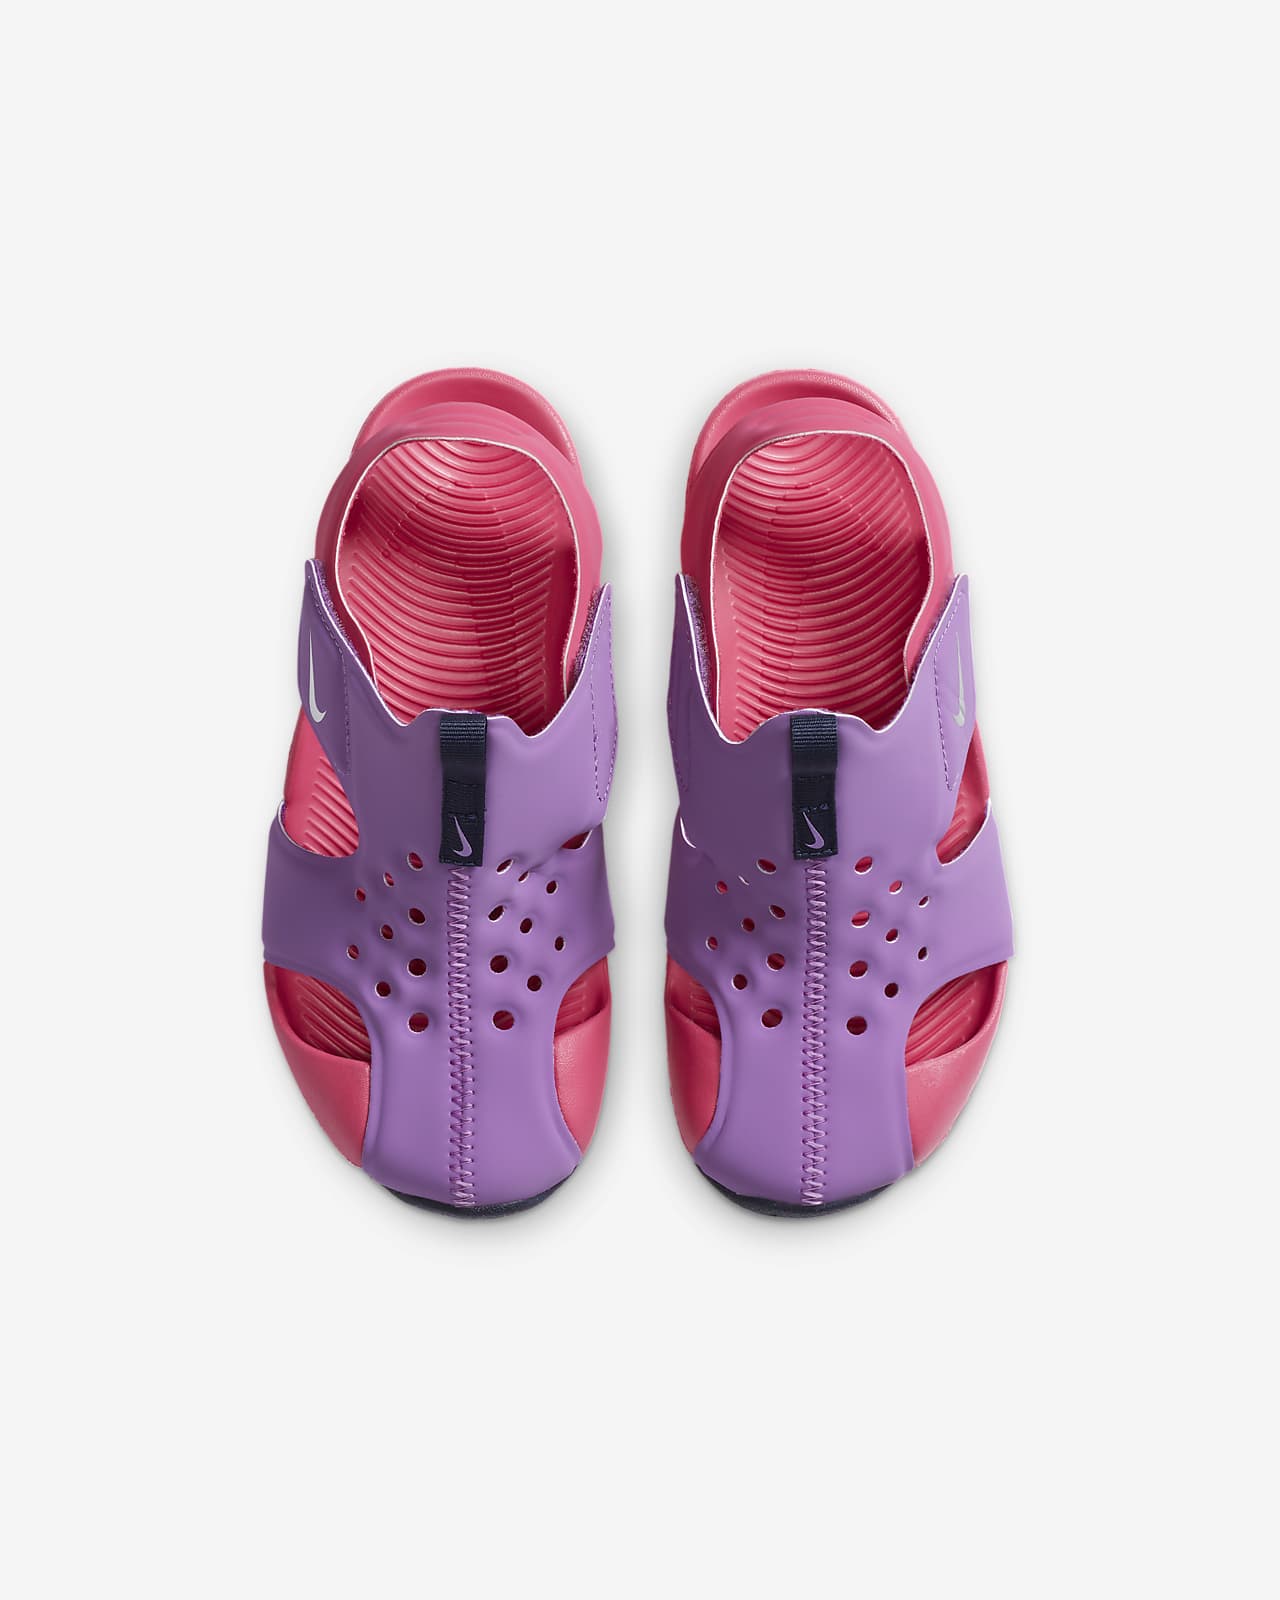 Sandalias para niños pequeños Nike Sunray Protect 2. Nike.com